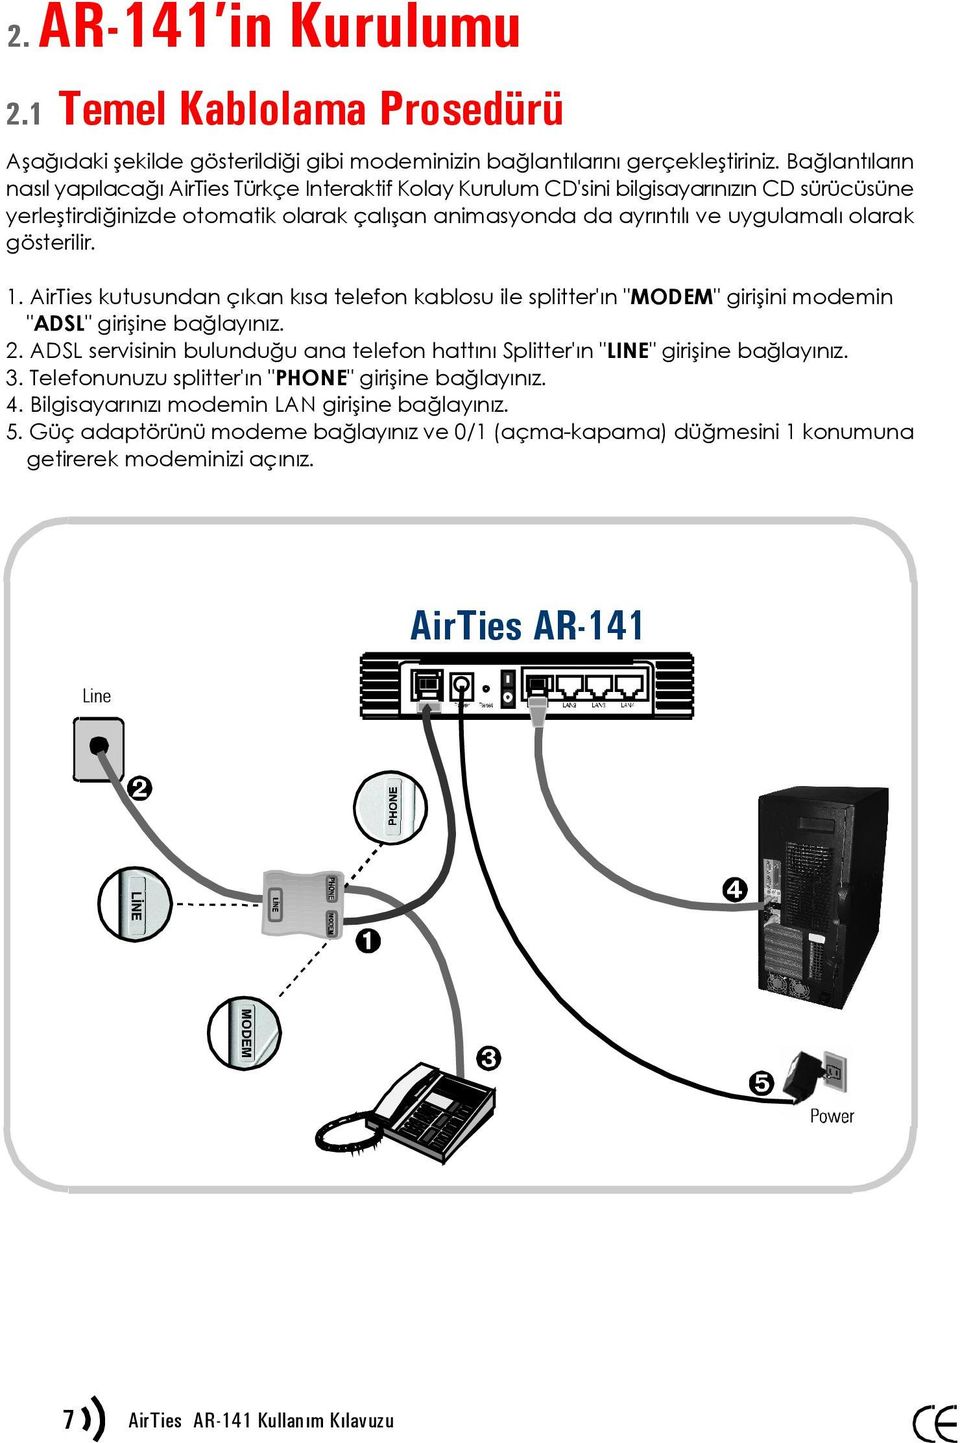 gösterilir. 1. AirTies kutusundan çıkan kısa telefon kablosu ile splitter'ın "MODEM" girişini modemin "ADSL" girişine bağlayınız. 2.